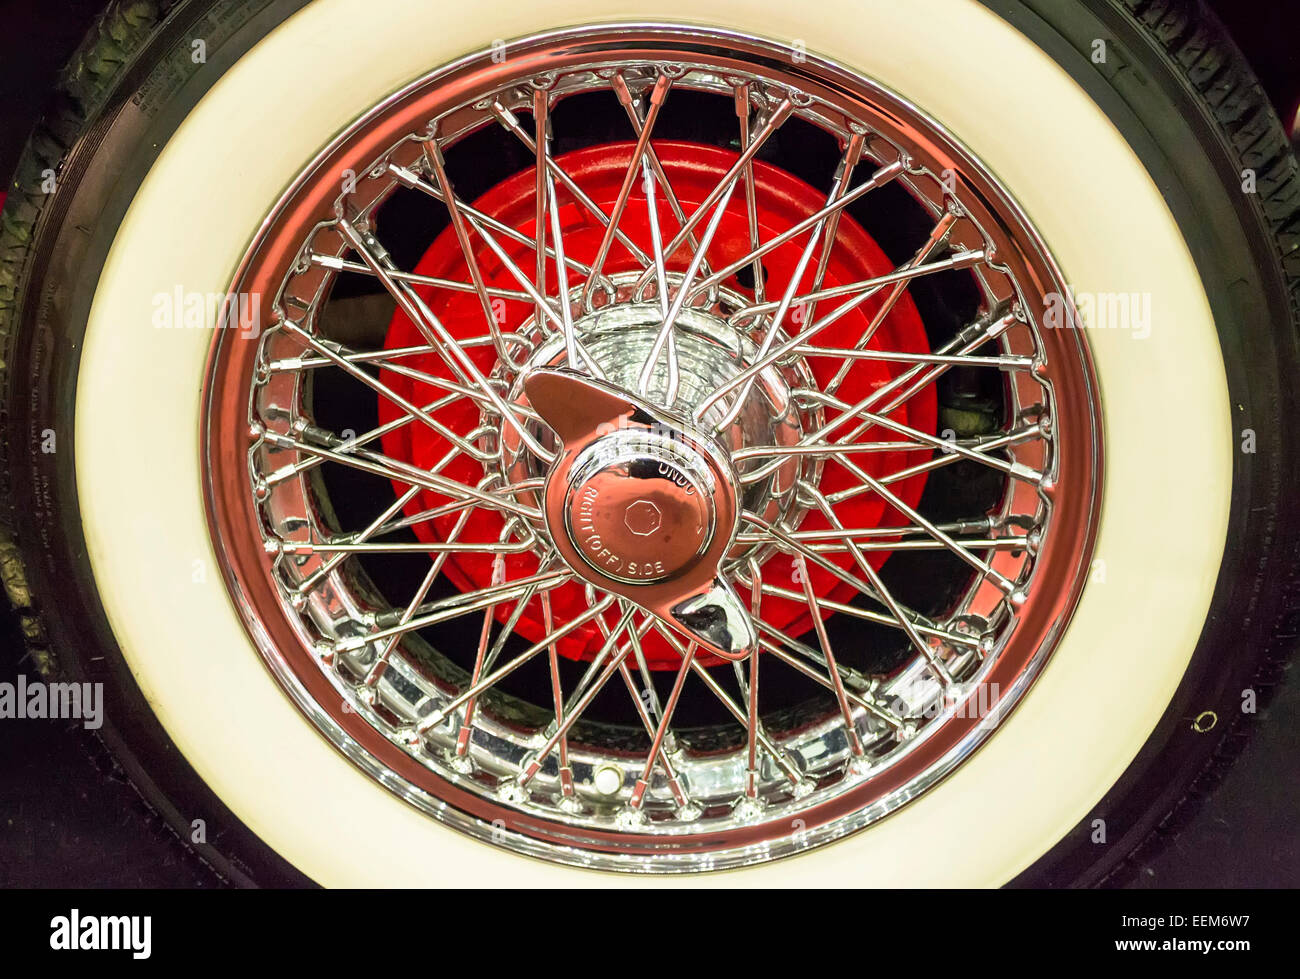 Oldtimer-Rad mit benutzerdefinierten Reifen und verchromten Stahlspeichen, detail Stockfoto